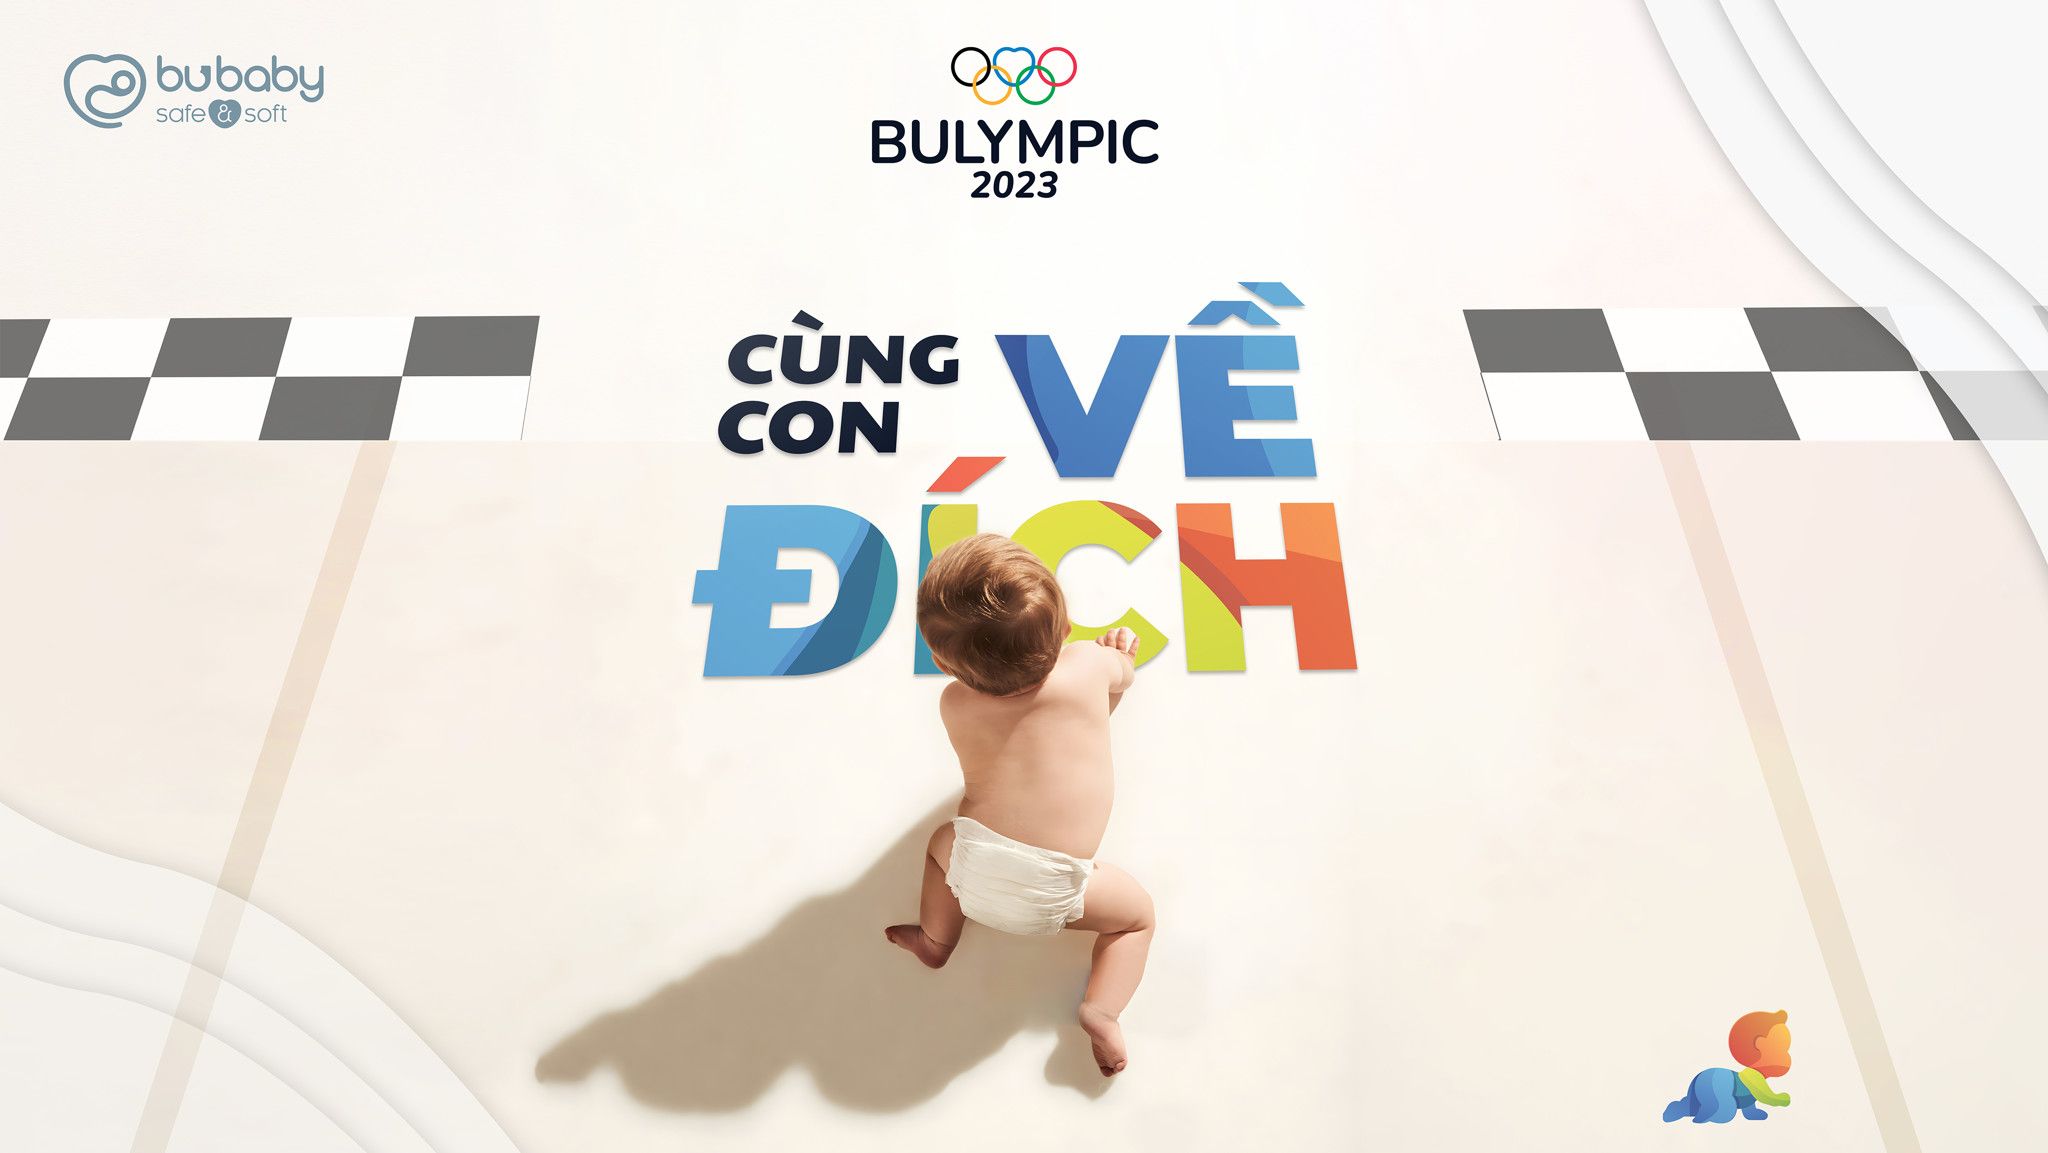 NHỮNG ĐIỀU CẦN BIẾT VỀ BULYMPIC 2023